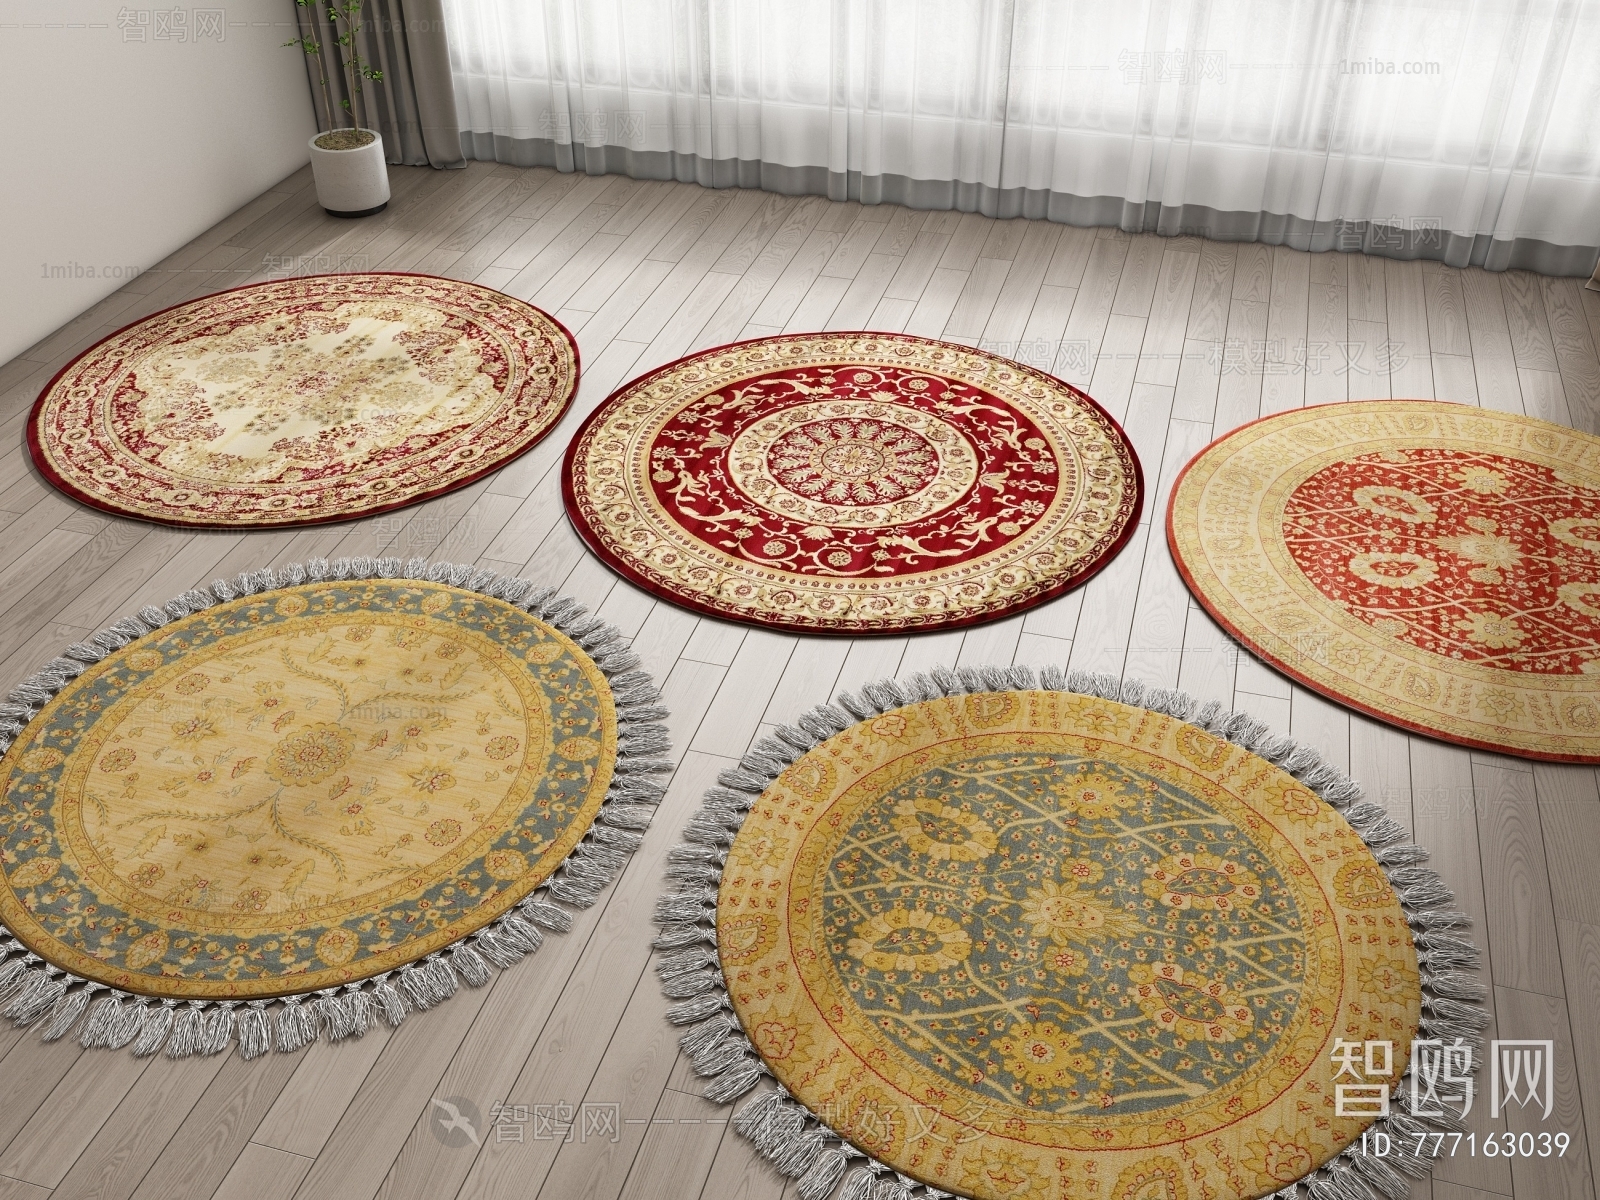 Chinese Style Circular Carpet